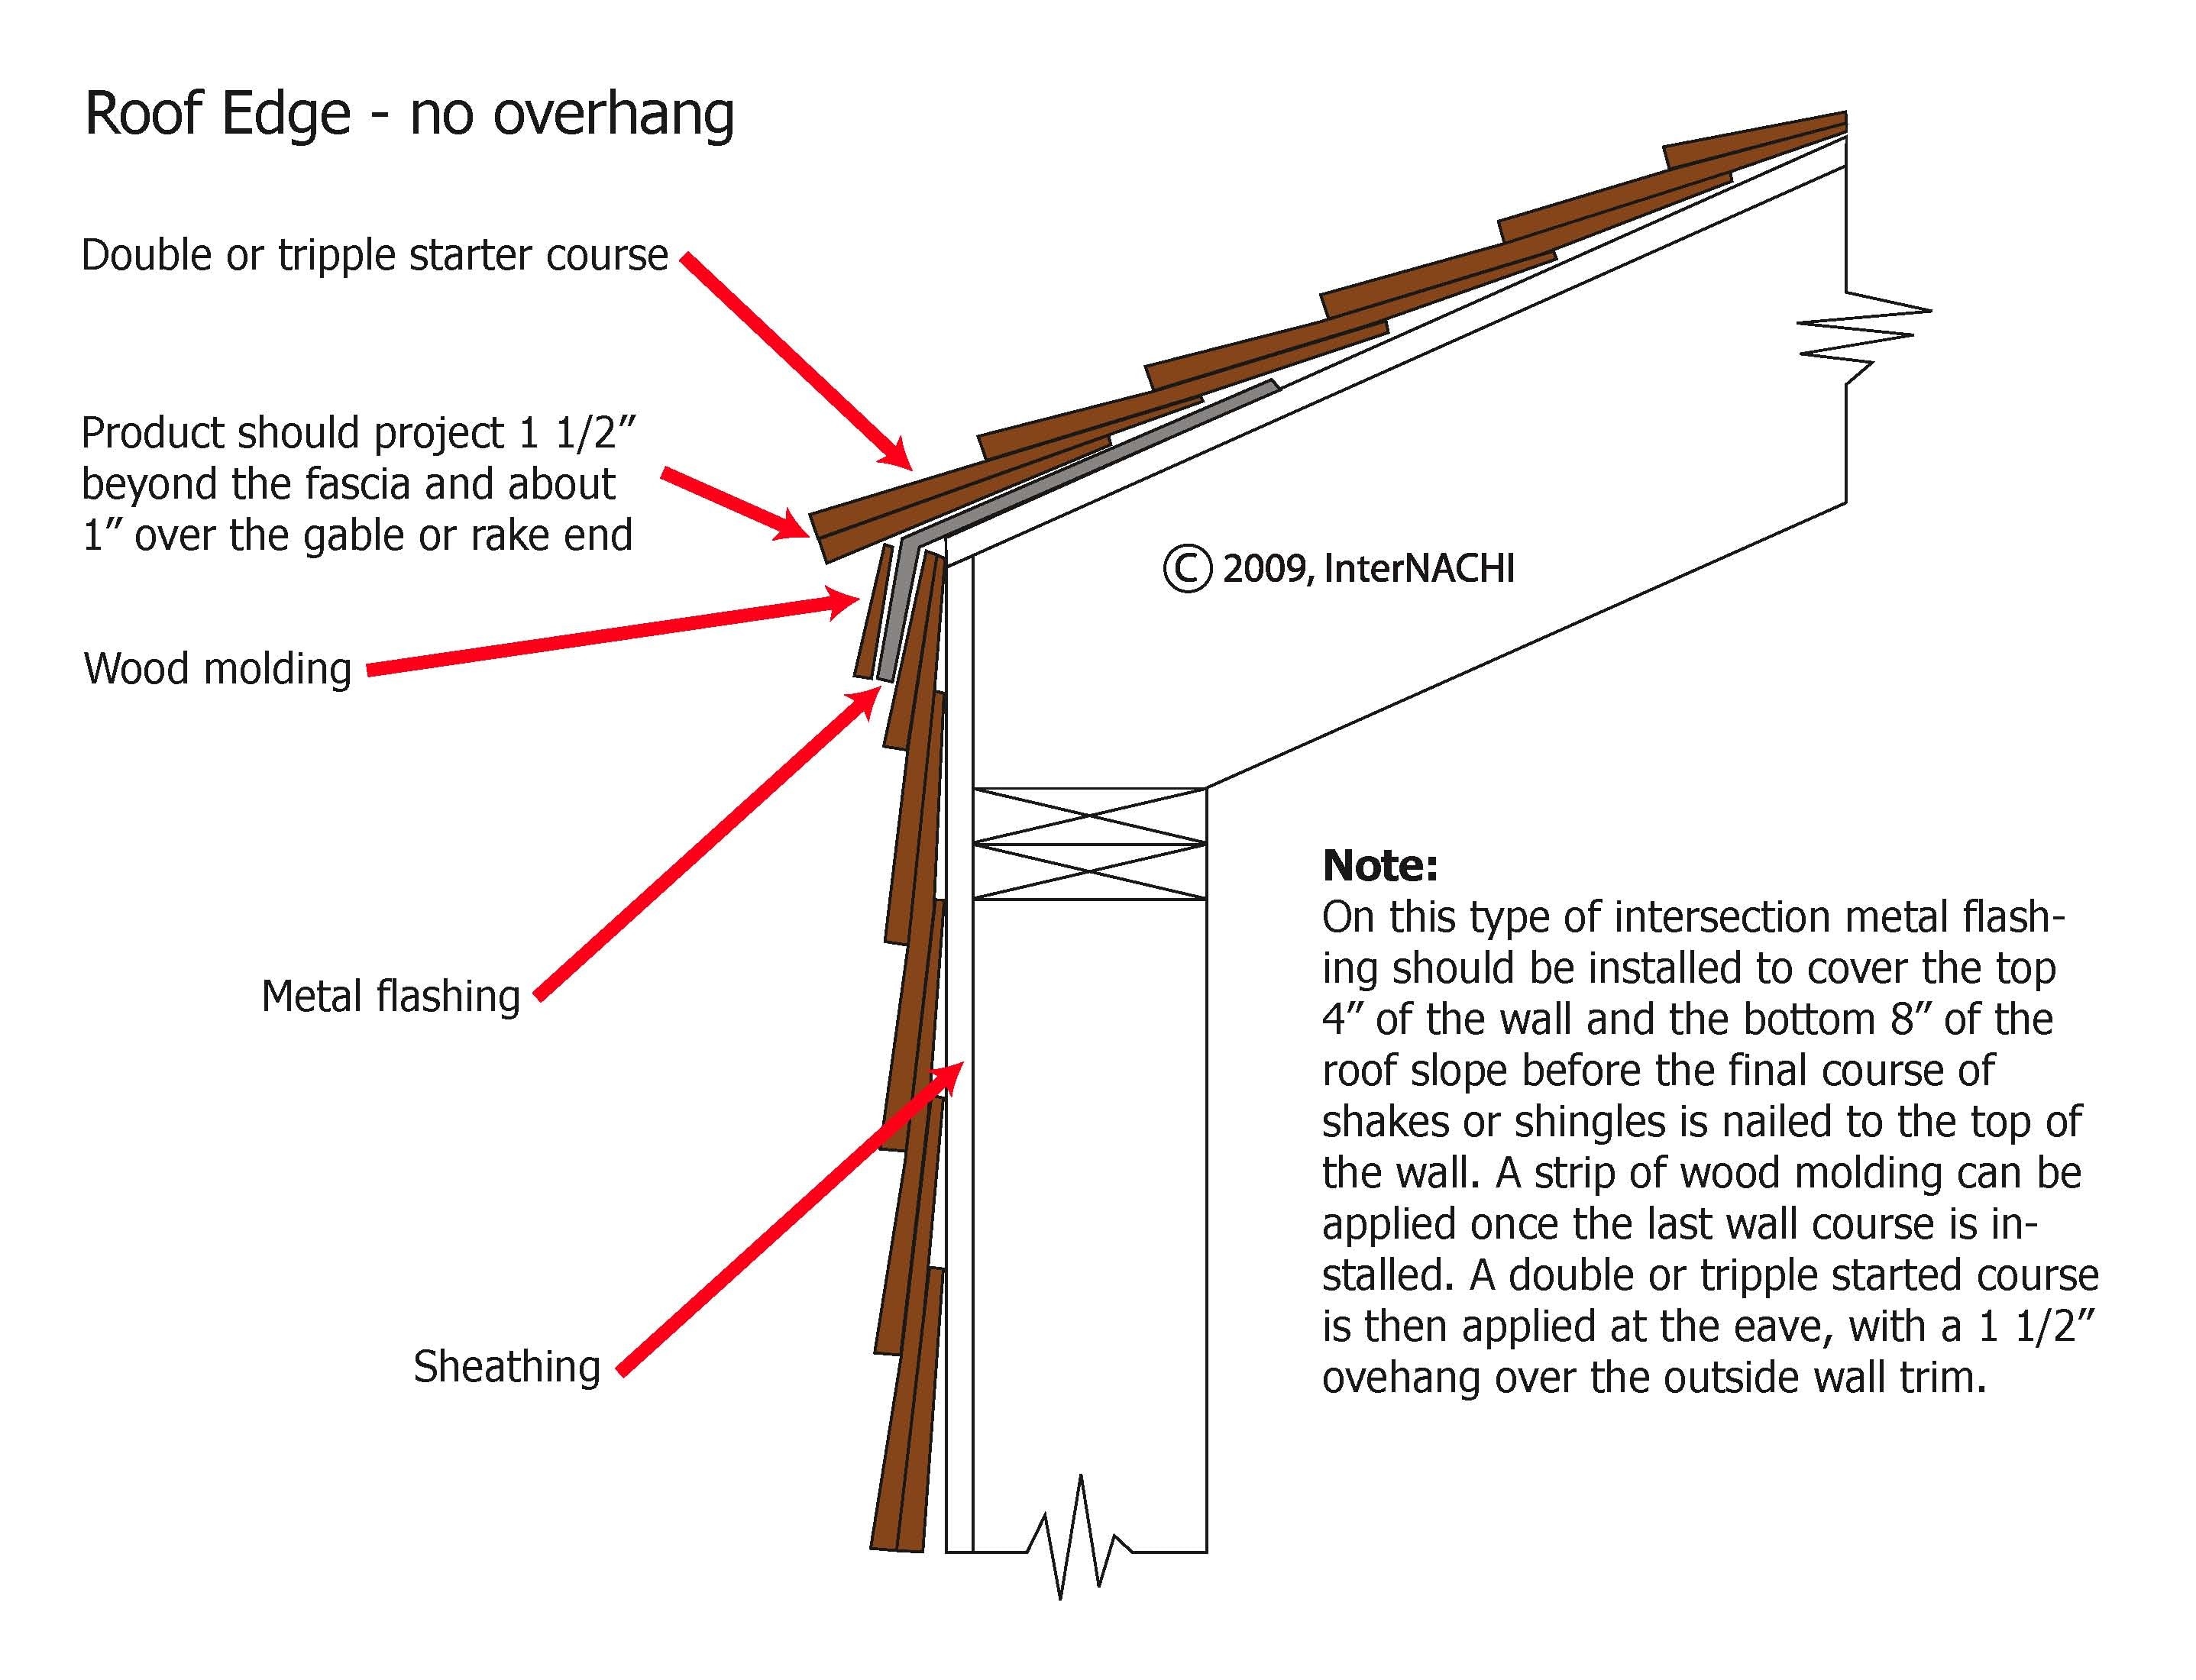 Roofing Overhang & Gambrel Roof Overhang Gambrel Roofing Pinterest Gambrel Roof Gambrel